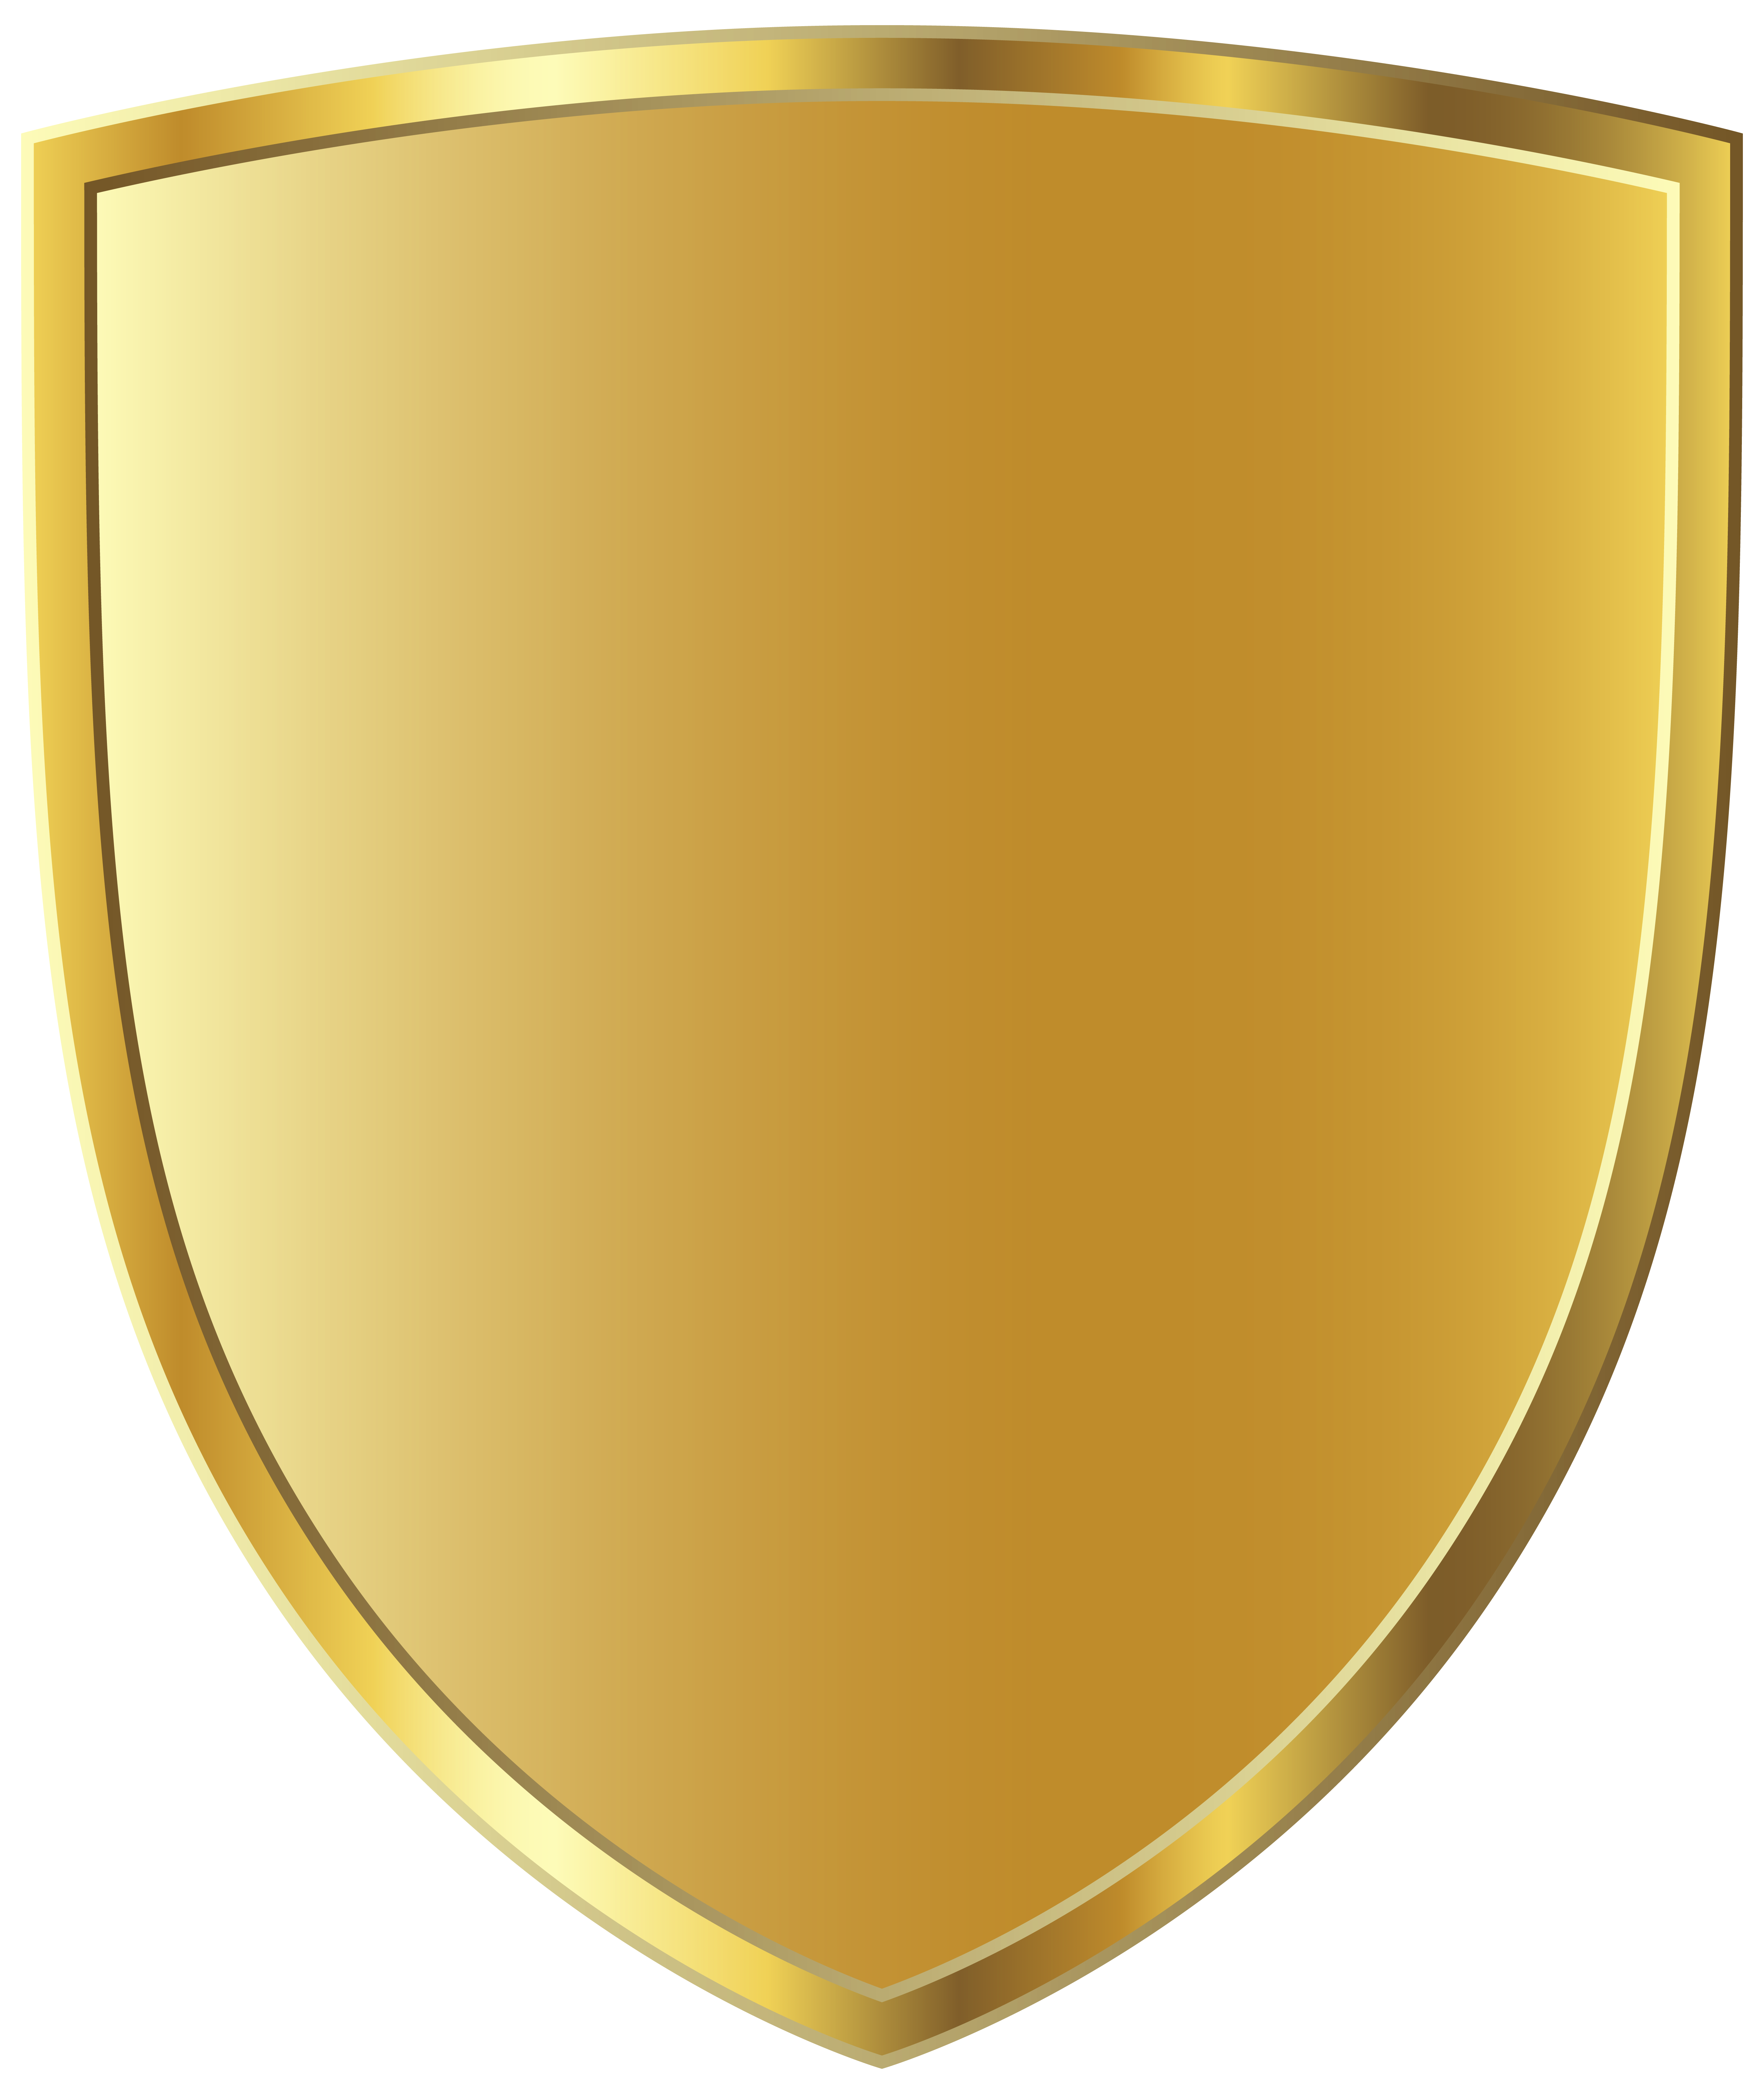 Imagen PNG de la insignia del escudo